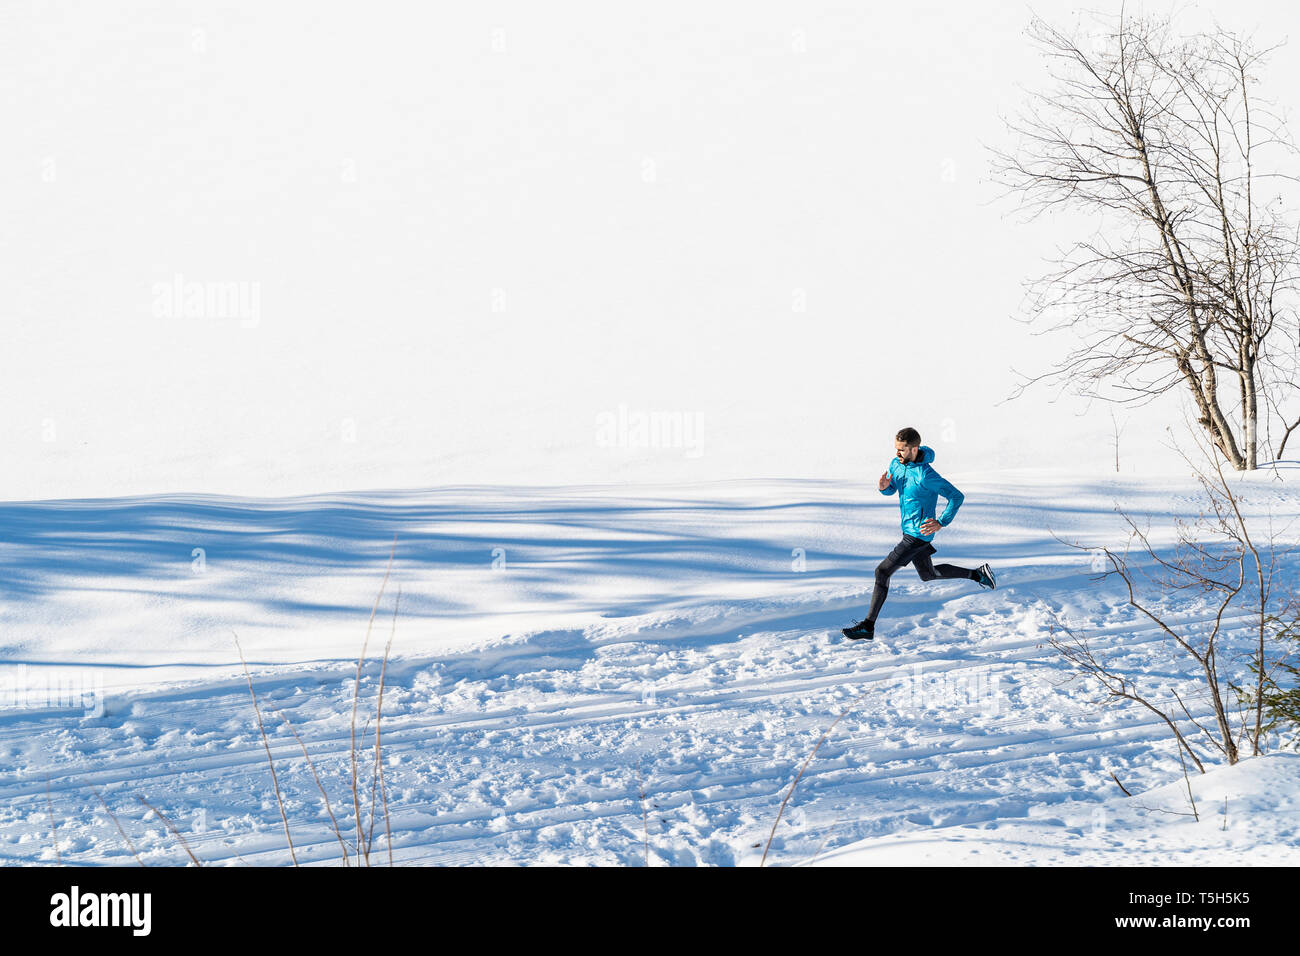 Germany, Bavaria, sportif homme qui court dans la neige en hiver Banque D'Images